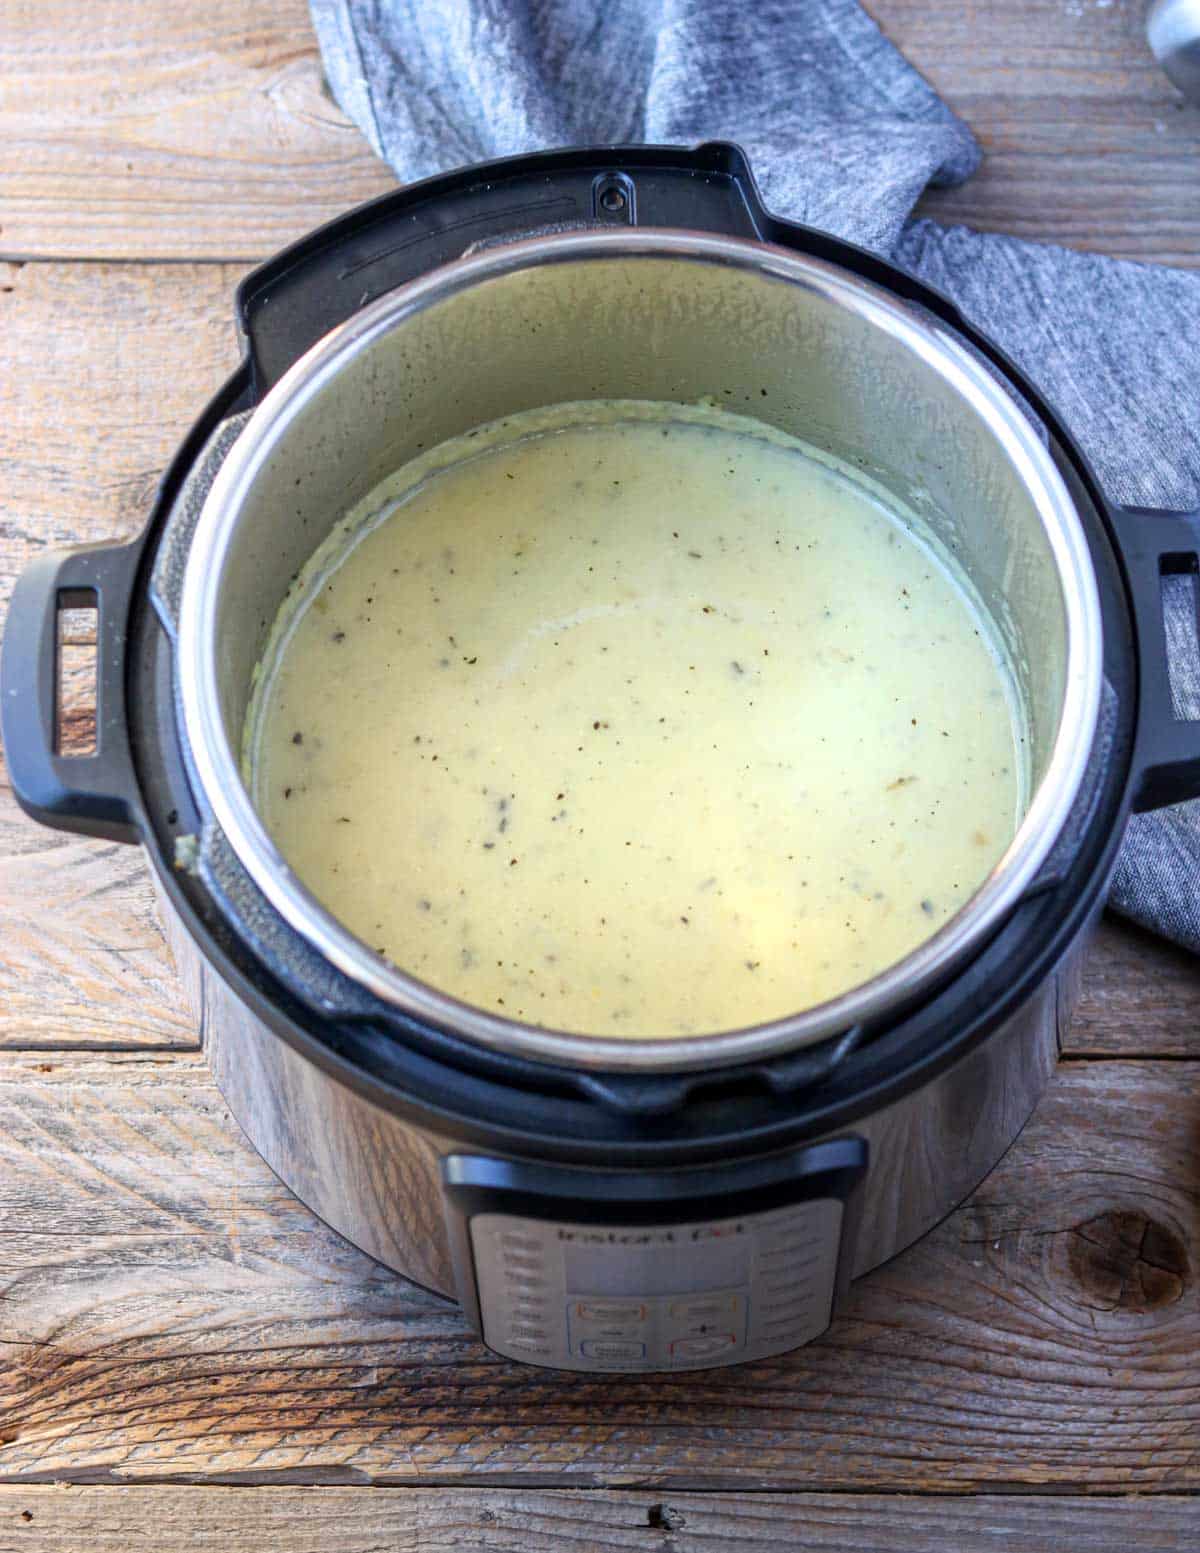 Instant Pot with potato soup inside